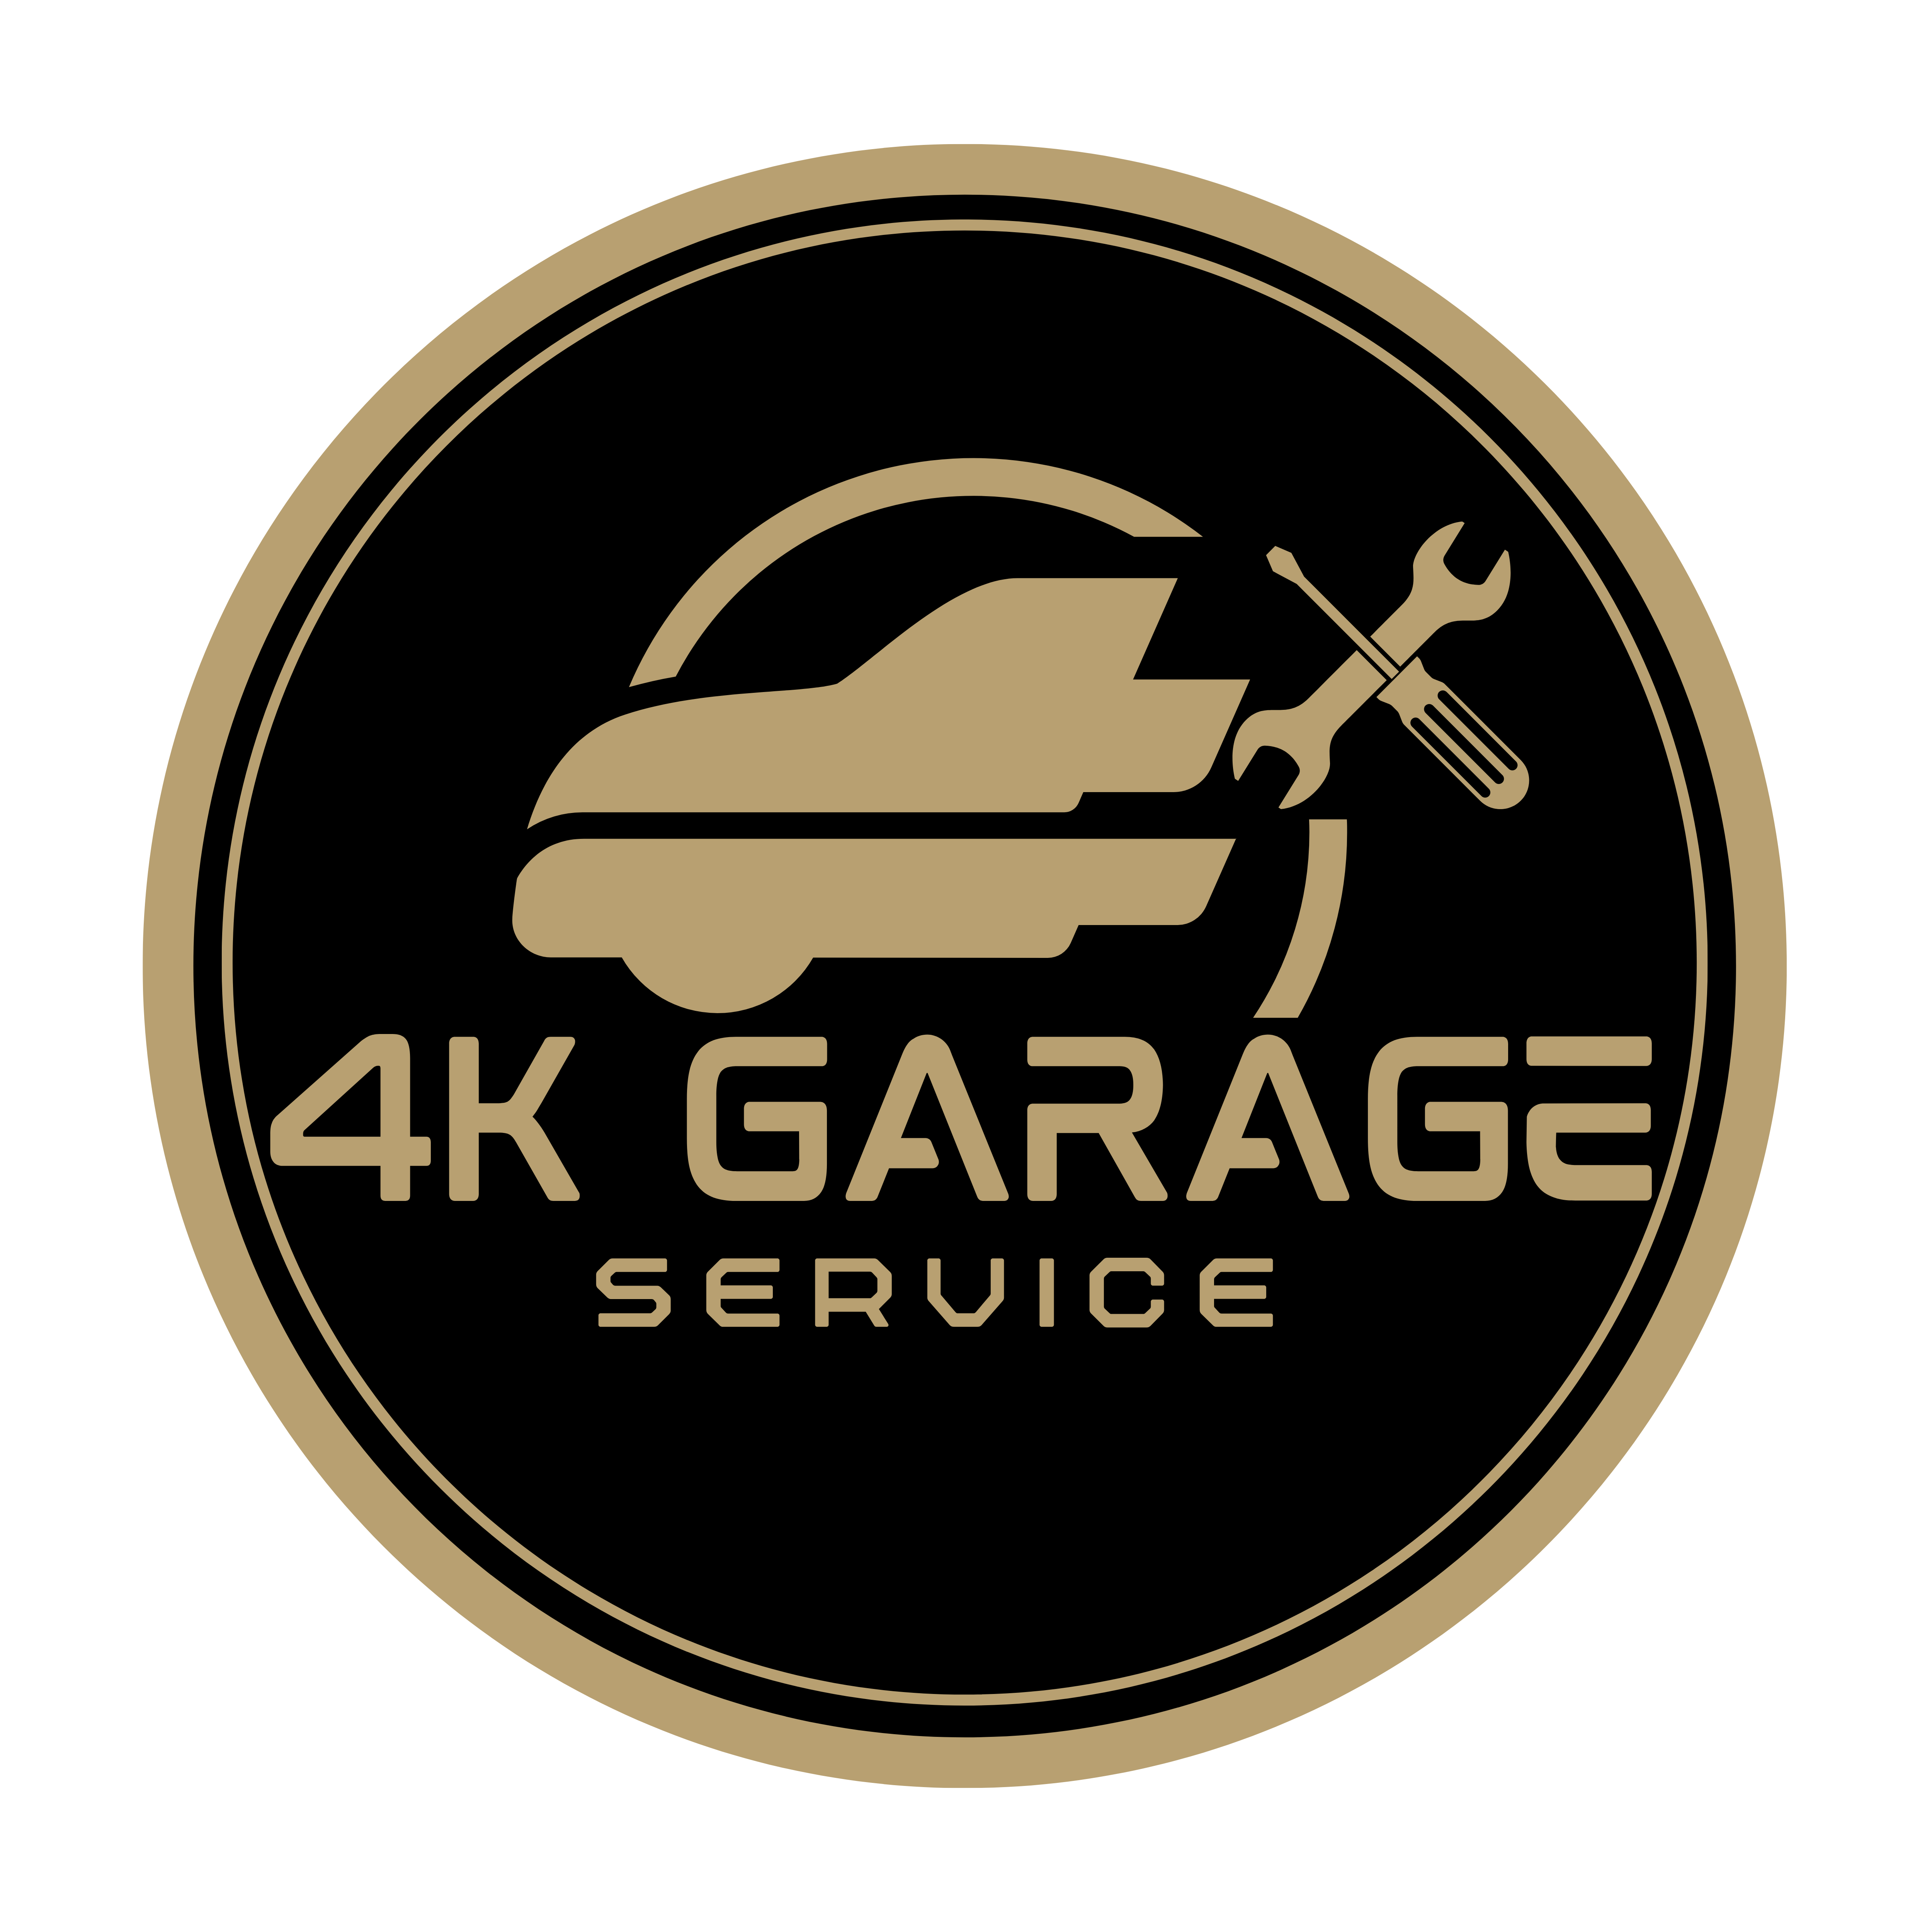 4K Garage Service (Bandung)